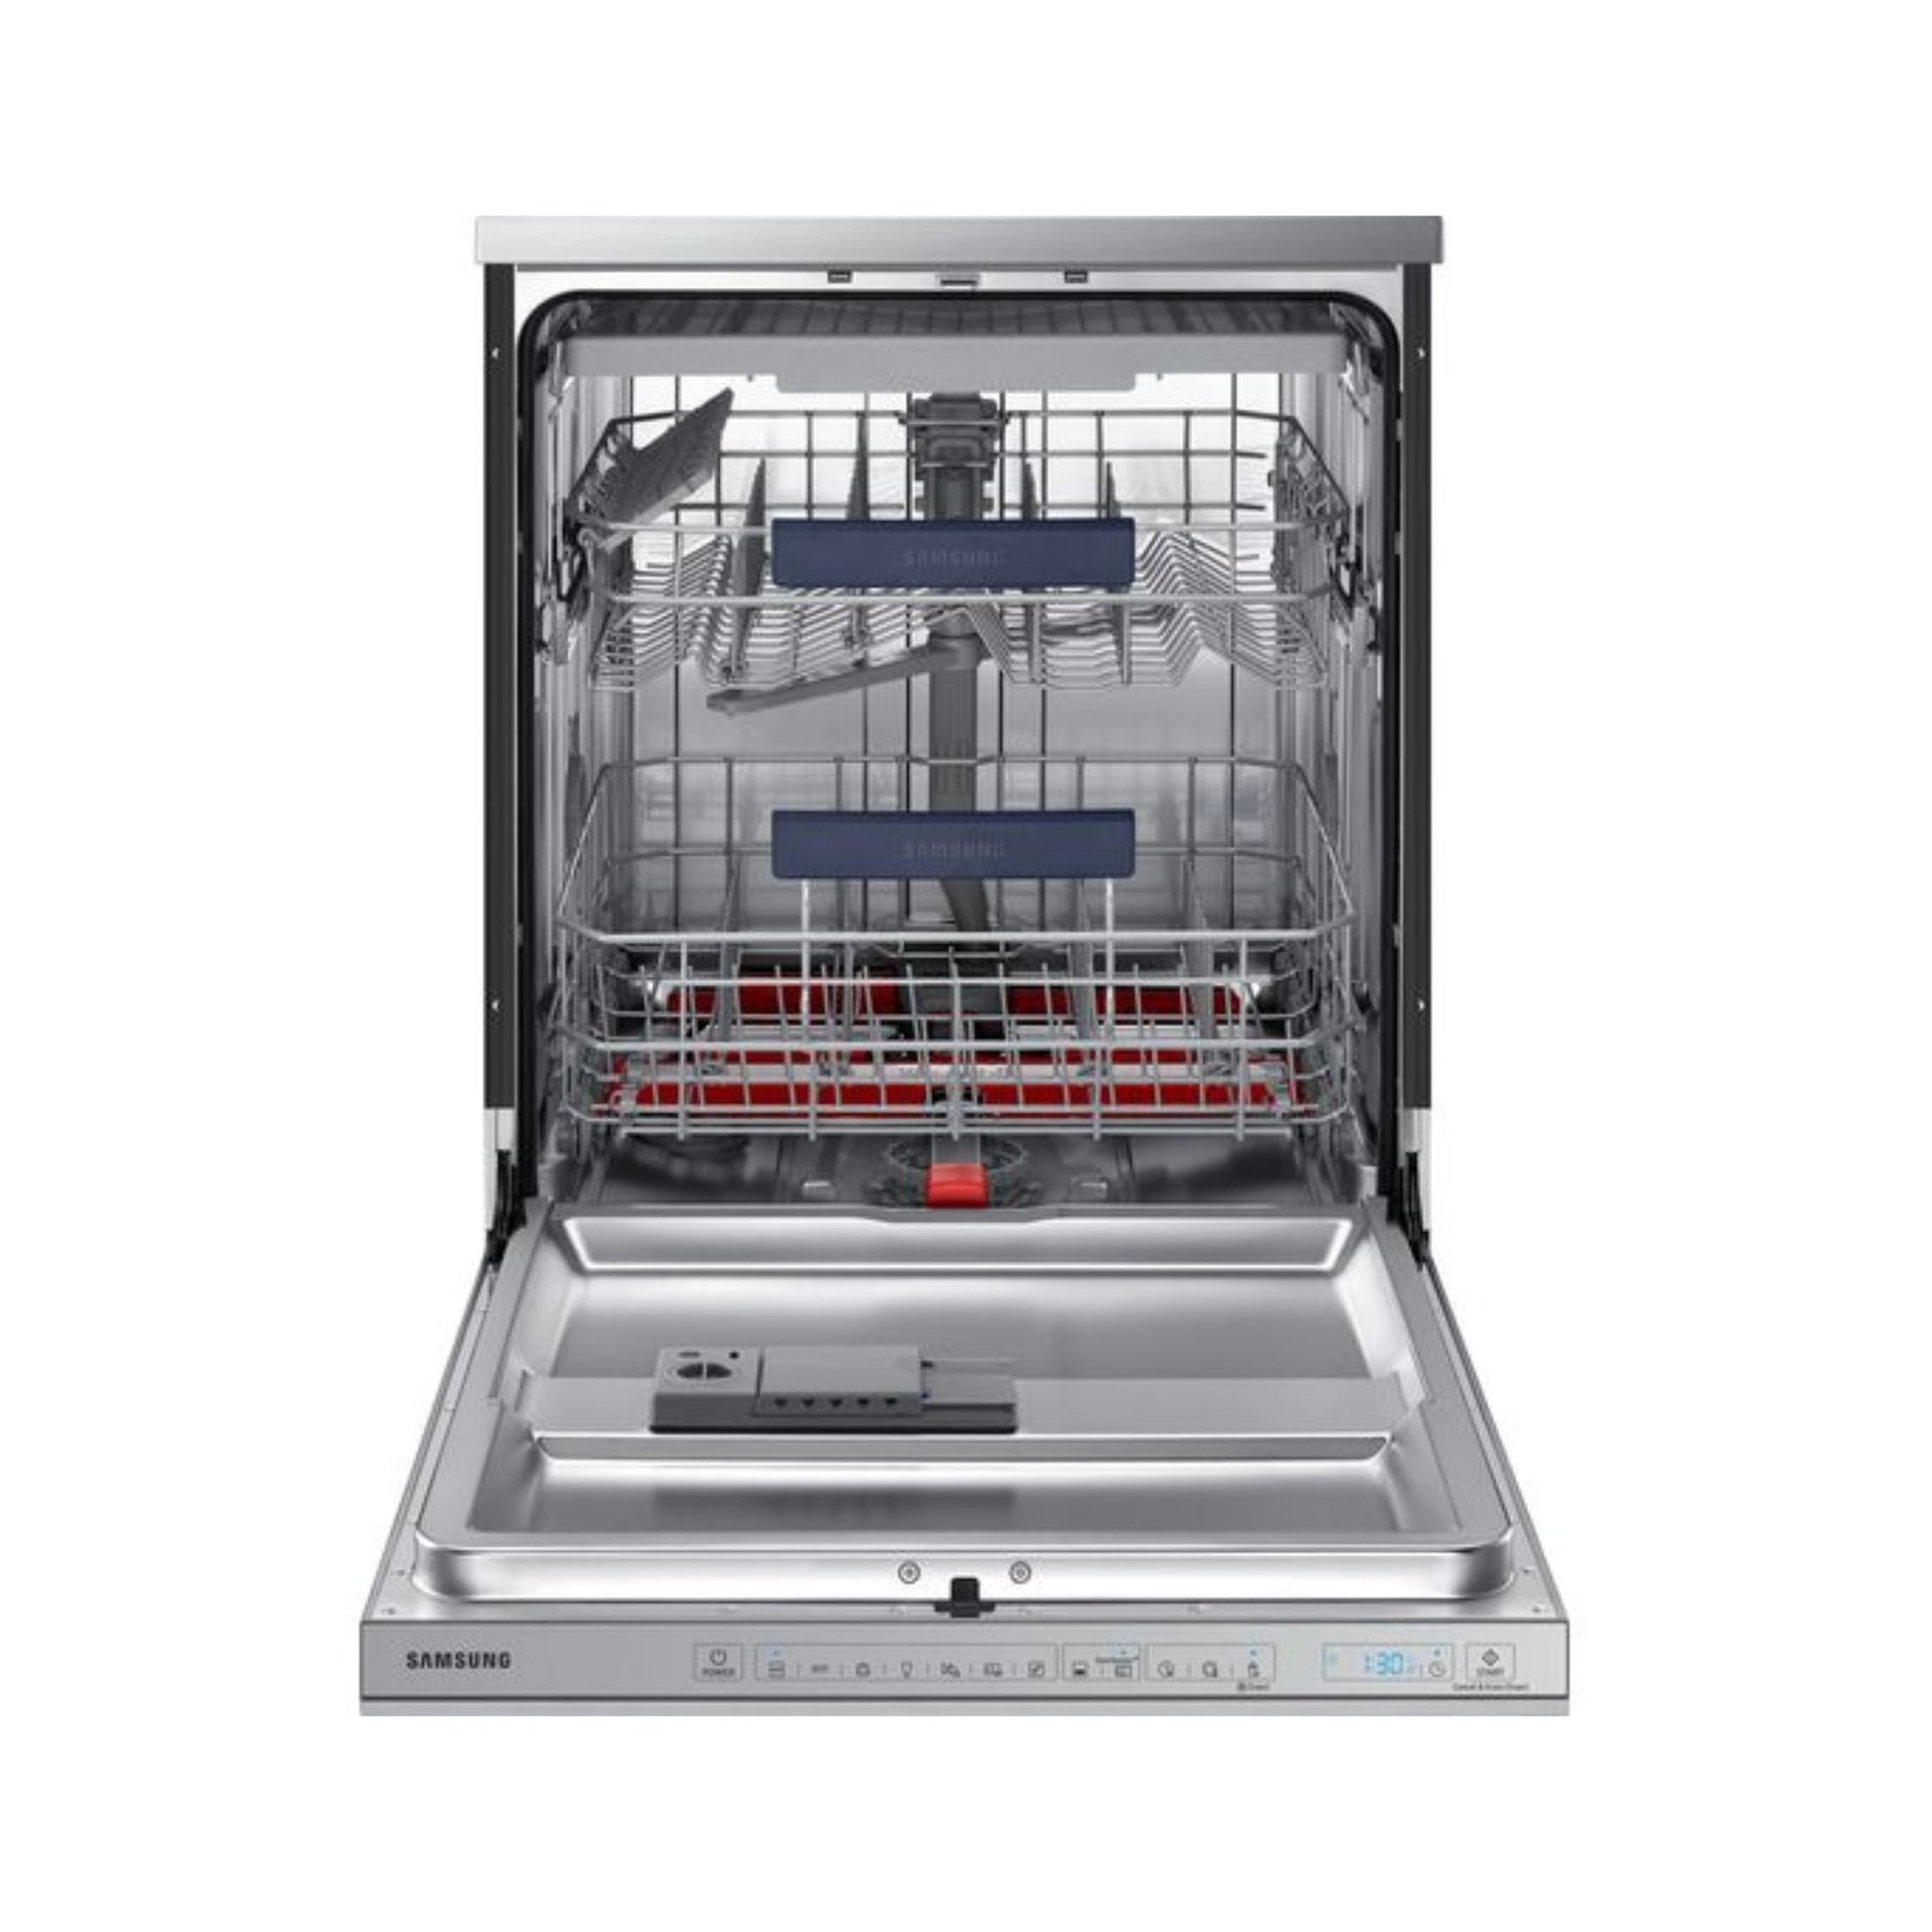 Samsung Freestanding Dishwasher, DW60M9550FS